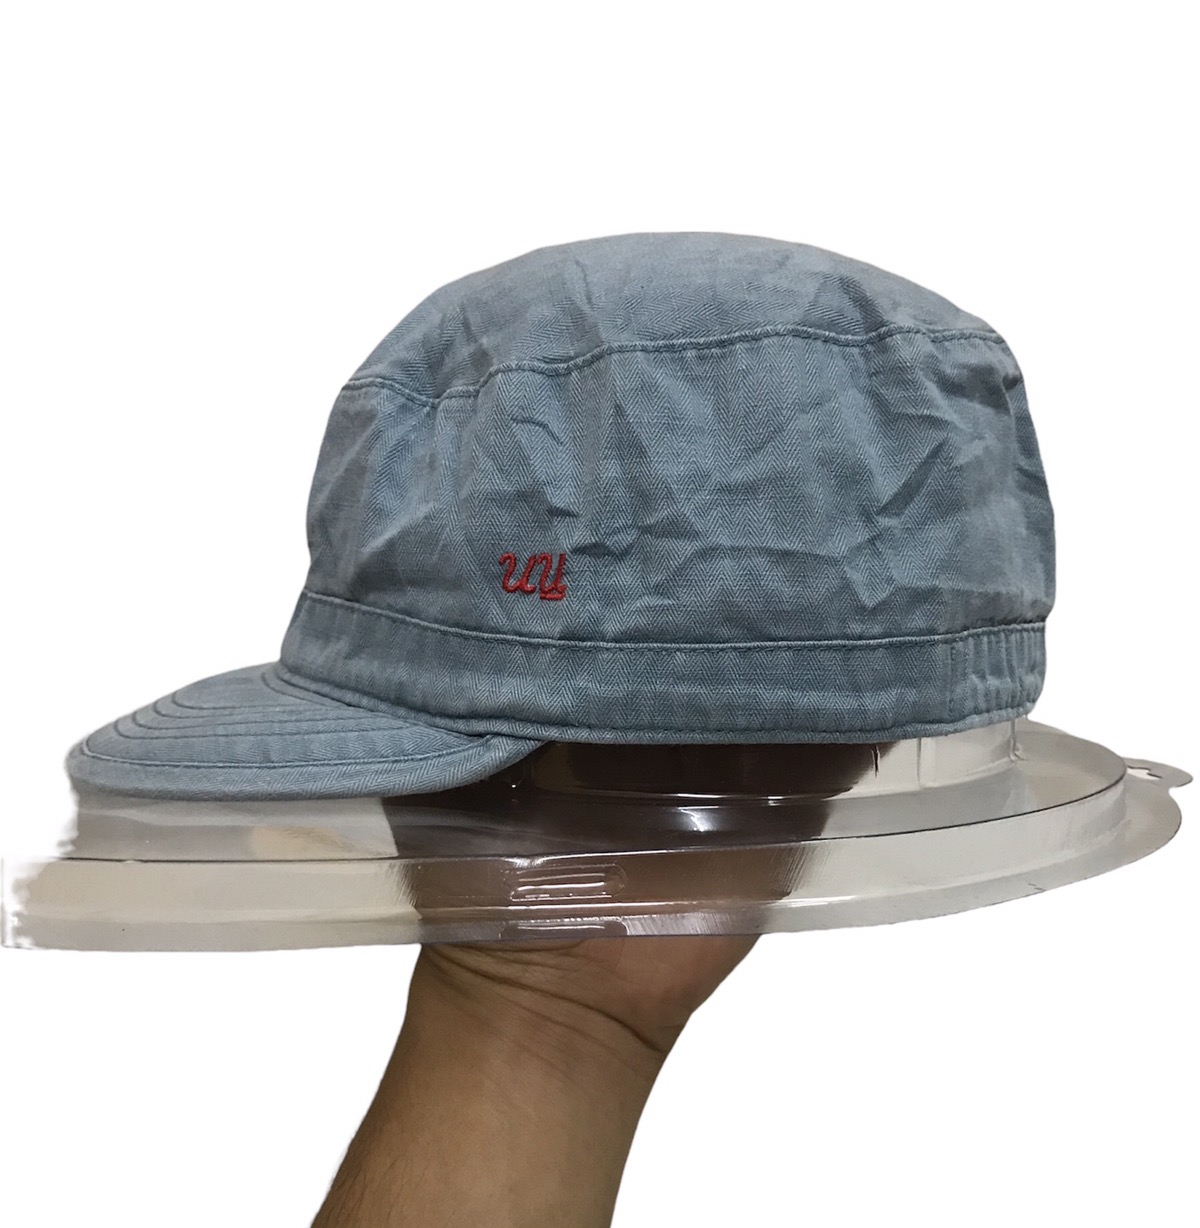 Uniqlo x Undercover Military Hat - 1